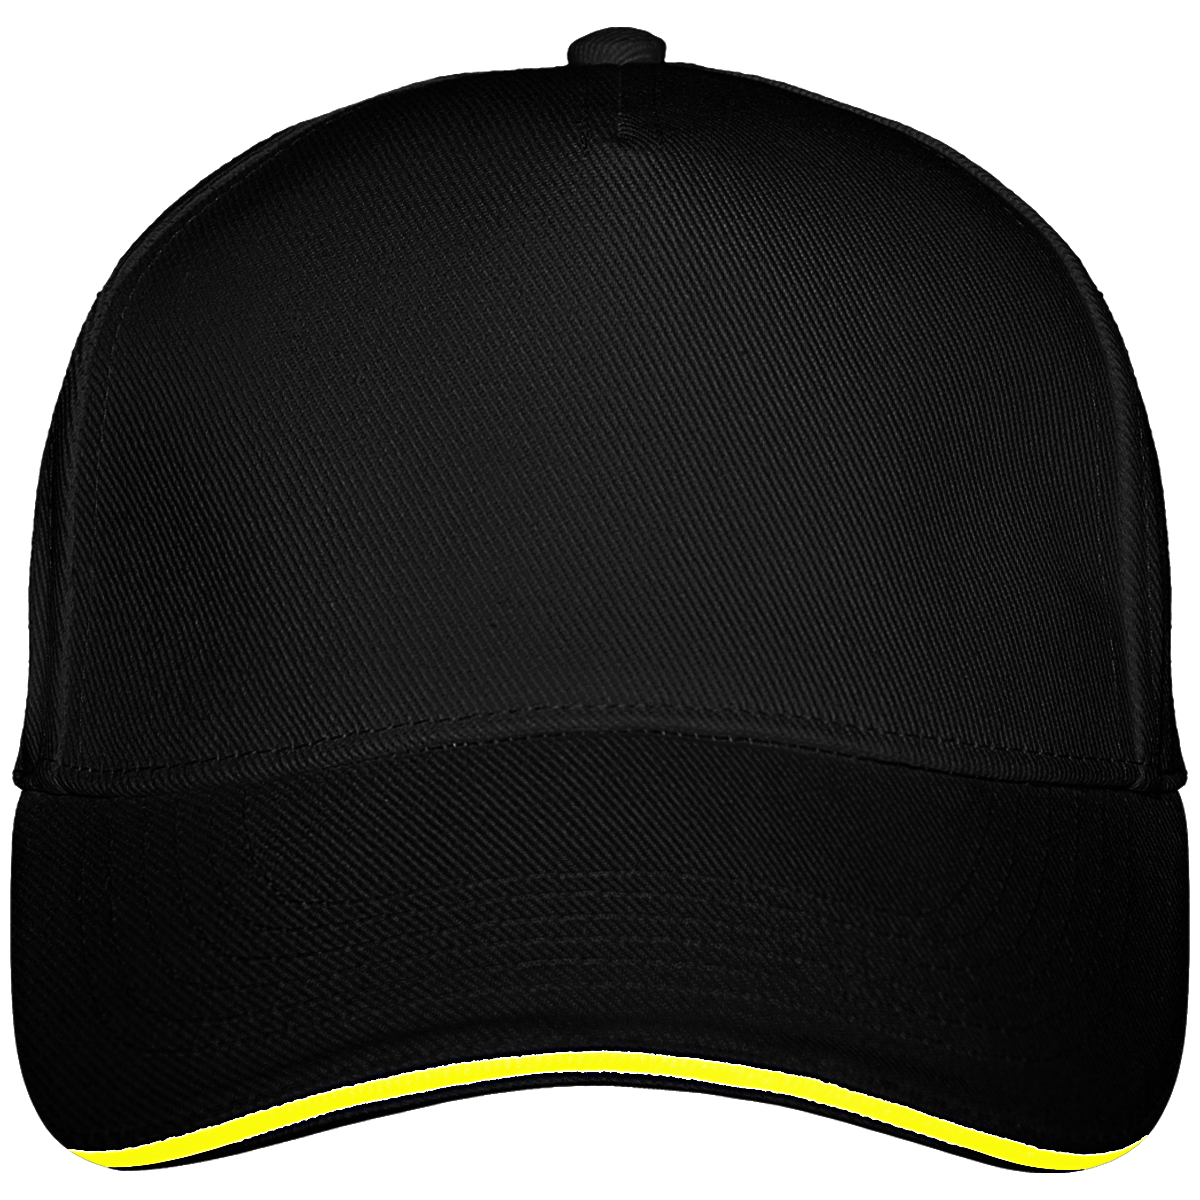 Ultimate 5 Panel Custom Cap Black / Yellow